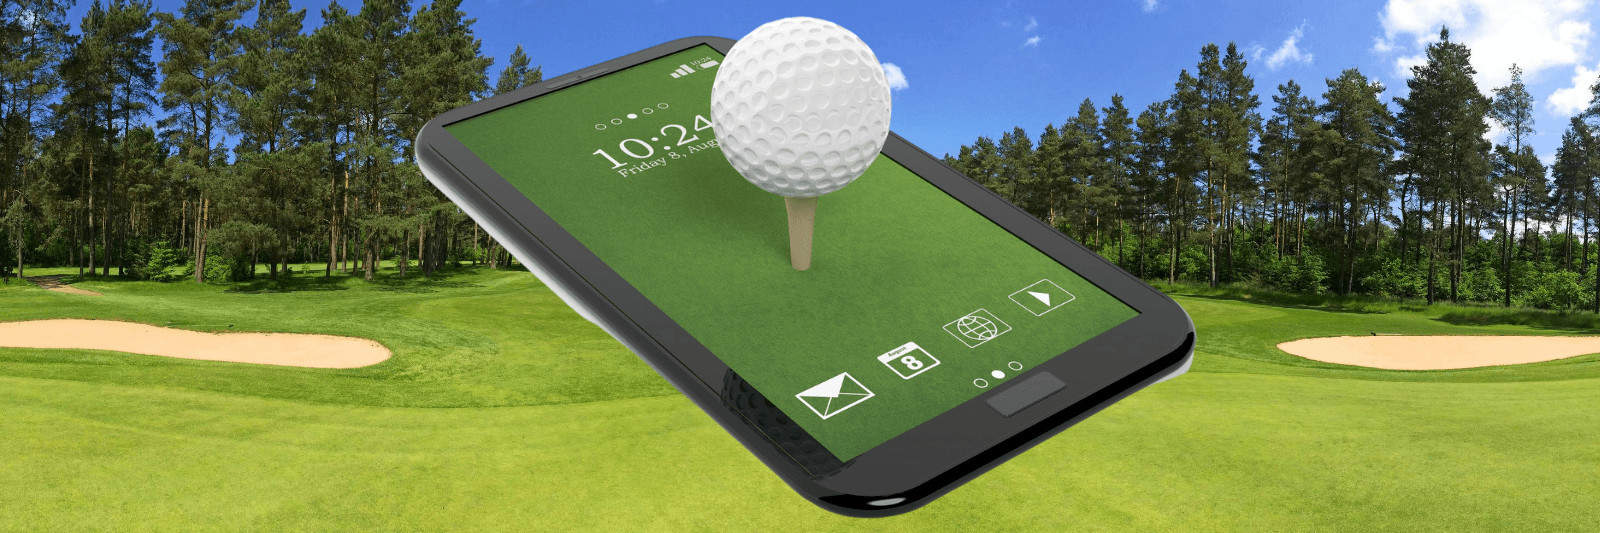 High-Tech Golfing Gifts